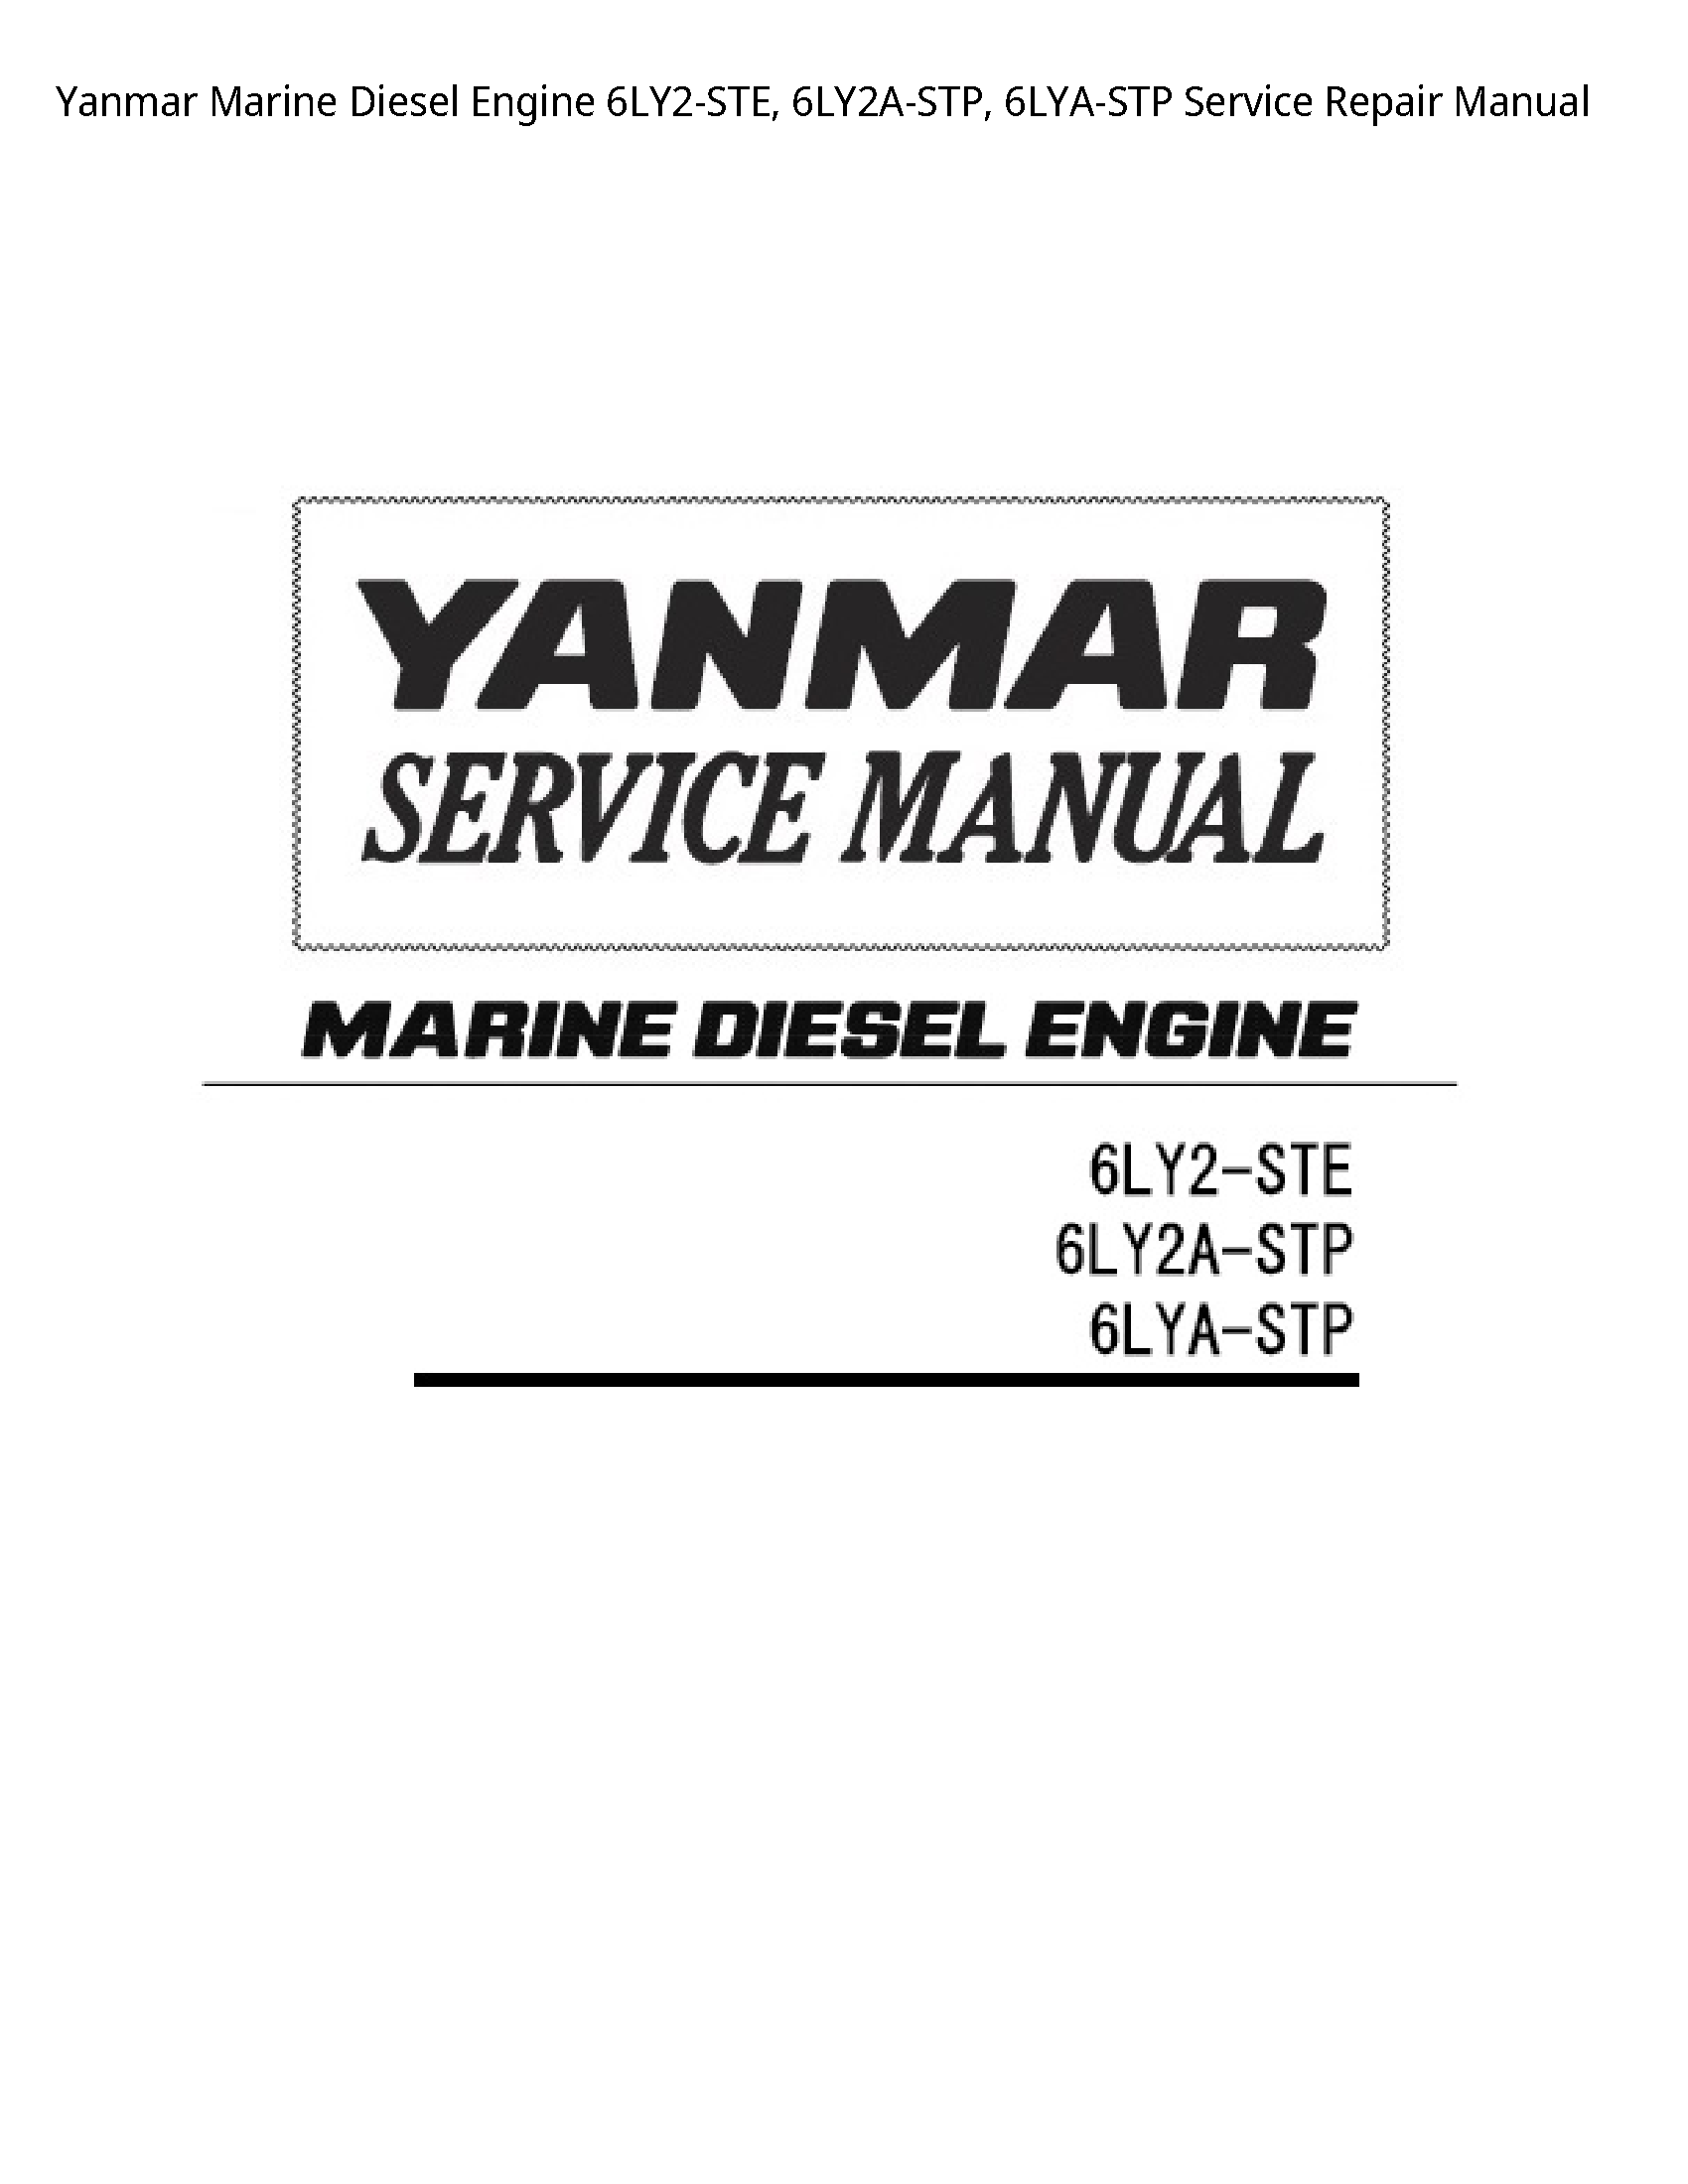 Yanmar 6LY2-STE Marine Diesel Engine manual